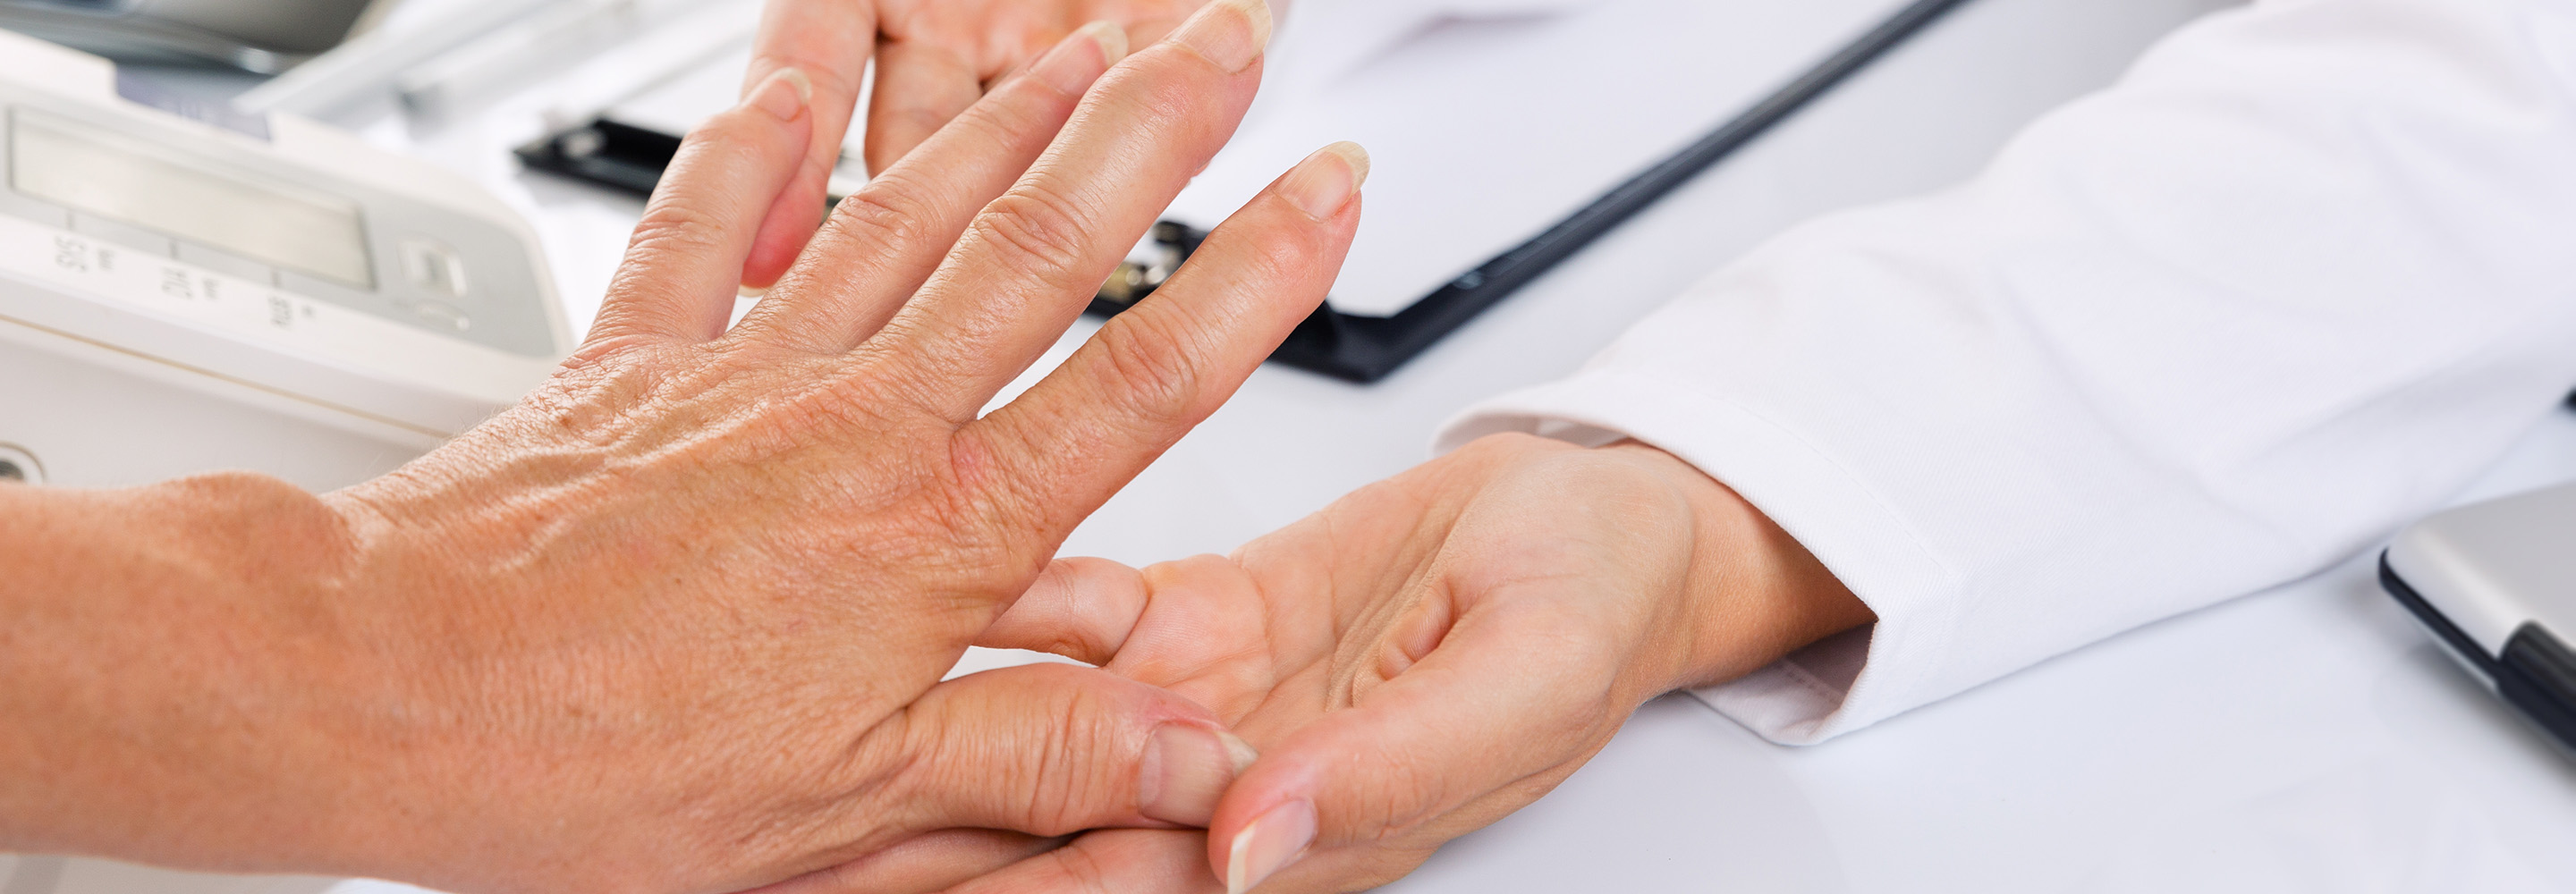 rheumatoid arthritis 20 évesen akut ízületi fájdalom kezelése